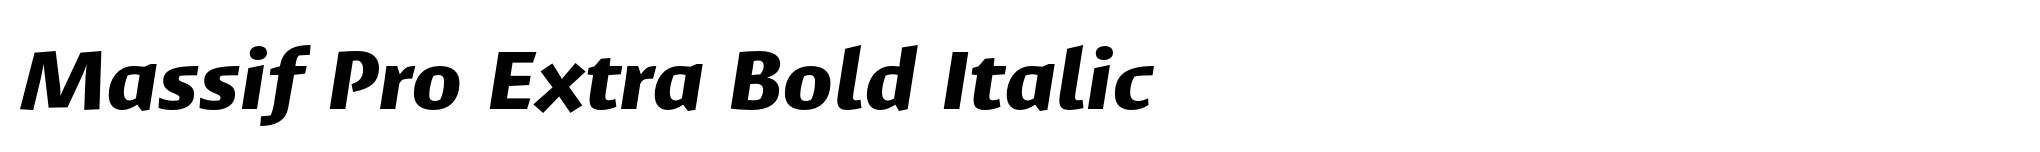 Massif Pro Extra Bold Italic image